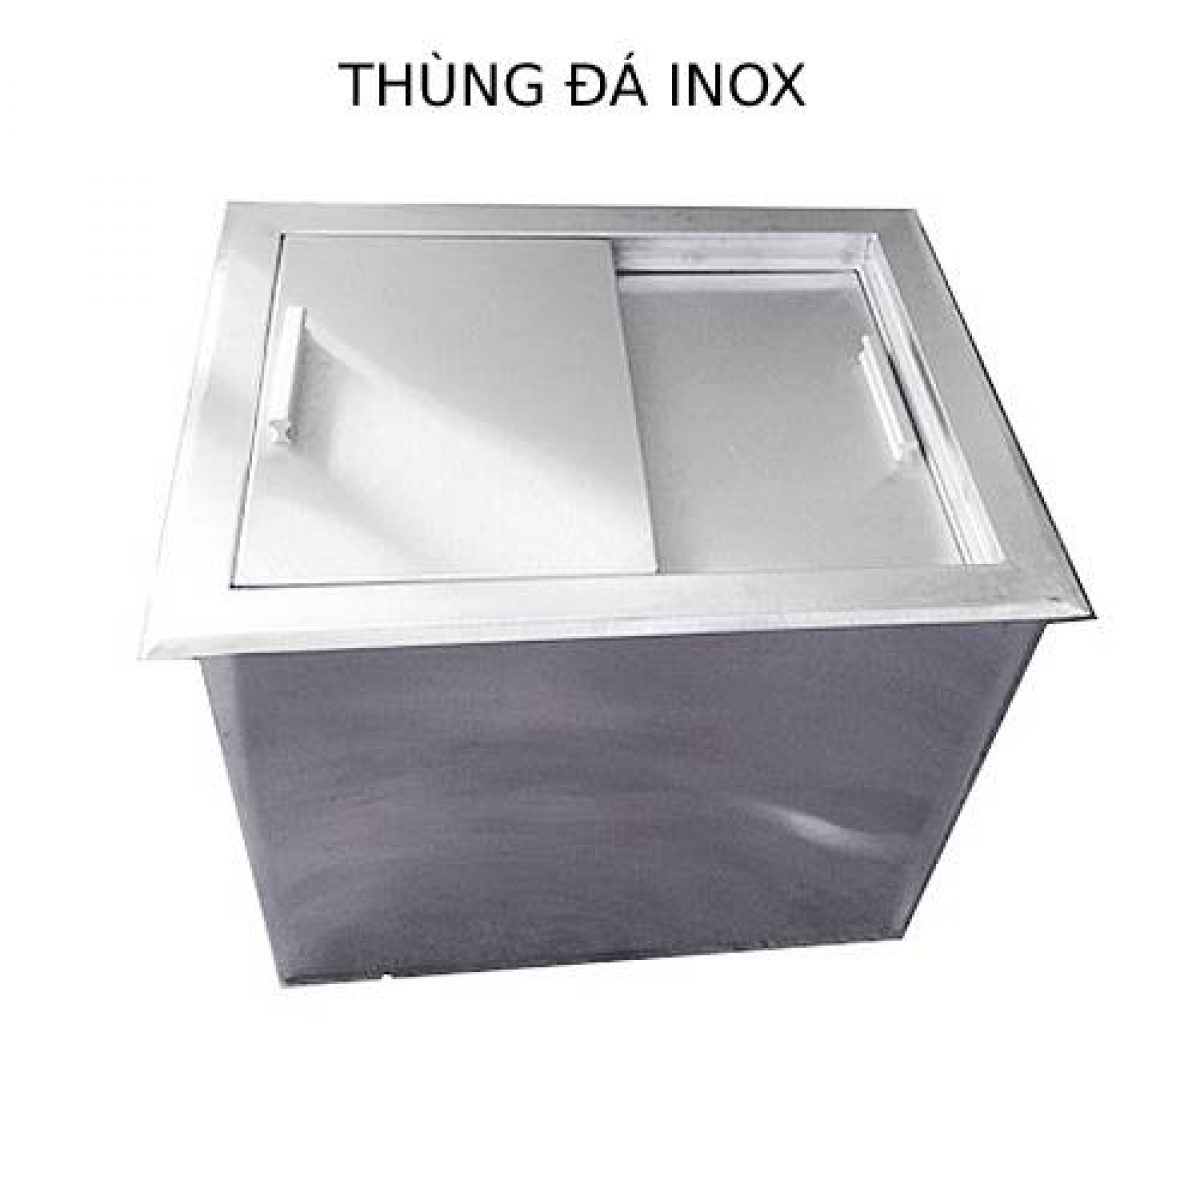 thung da inox am ban | Inox dân dụng Toán Huệ